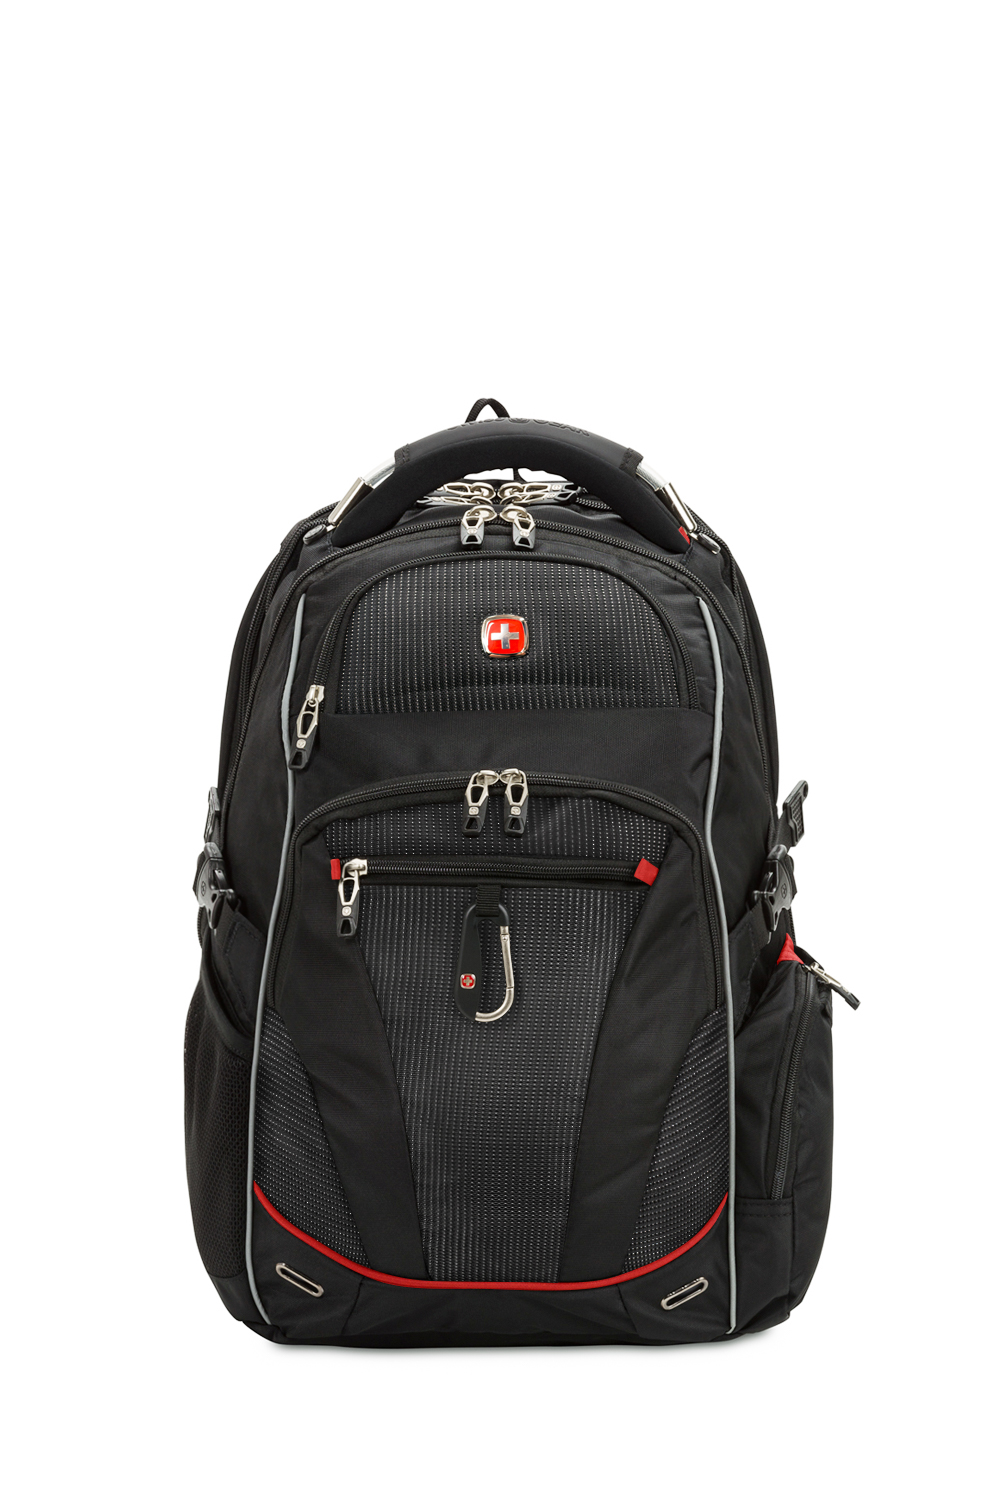  6752 ScanSmart Laptop Backpack - Black/Red